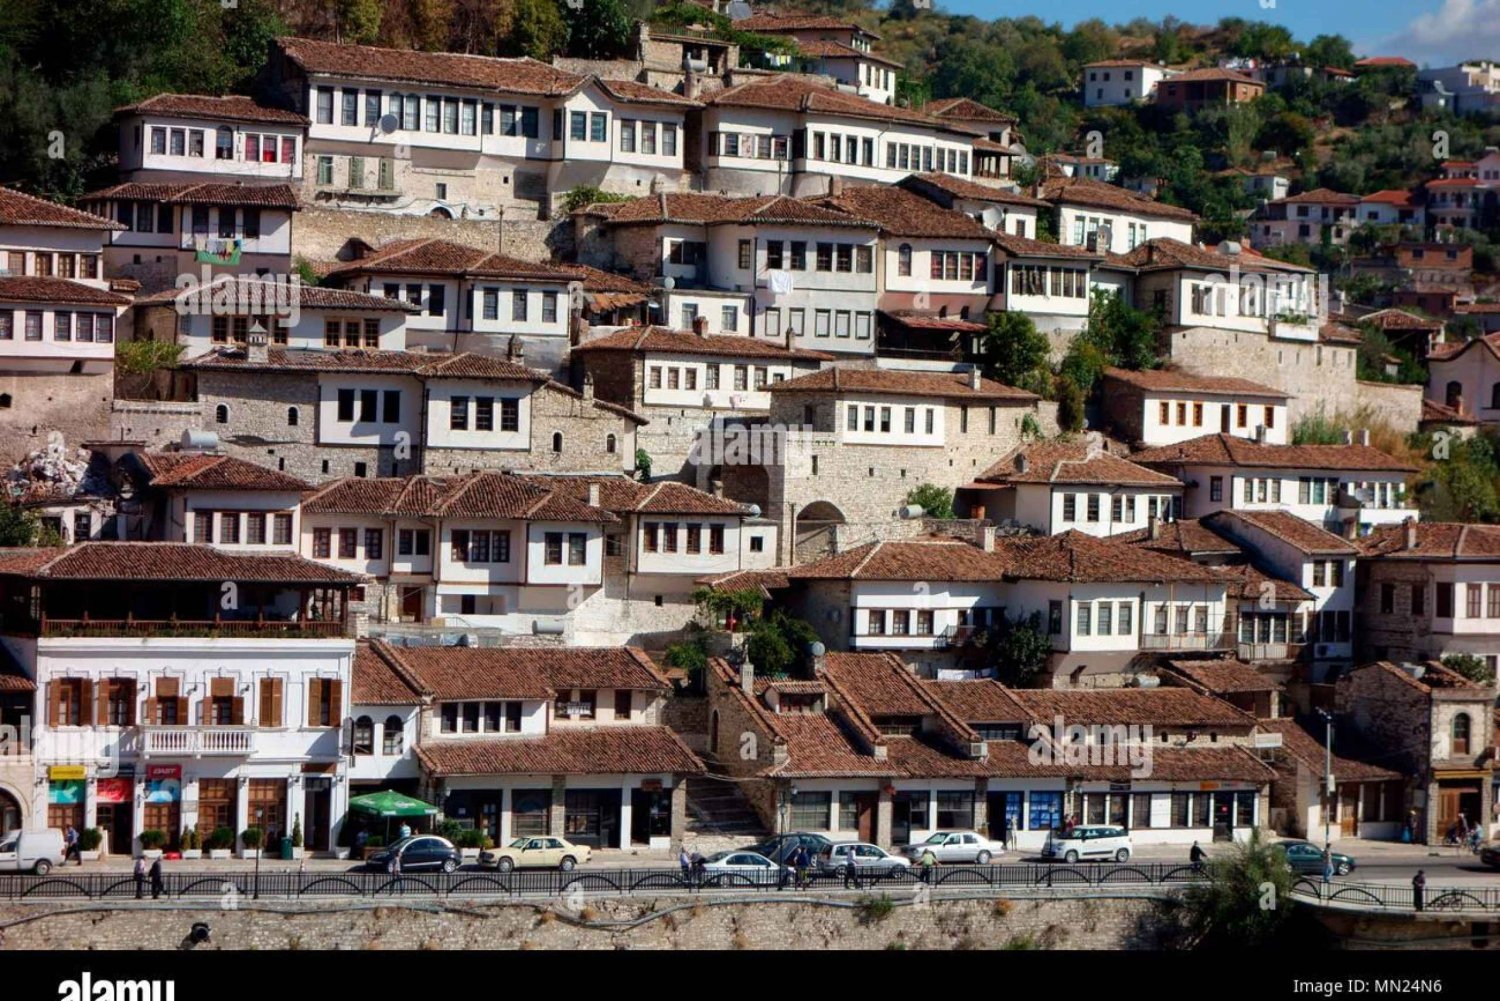 Descubre Belshi y Berat: Ciudad de las Maravillas del Patrimonio de la UNESCO